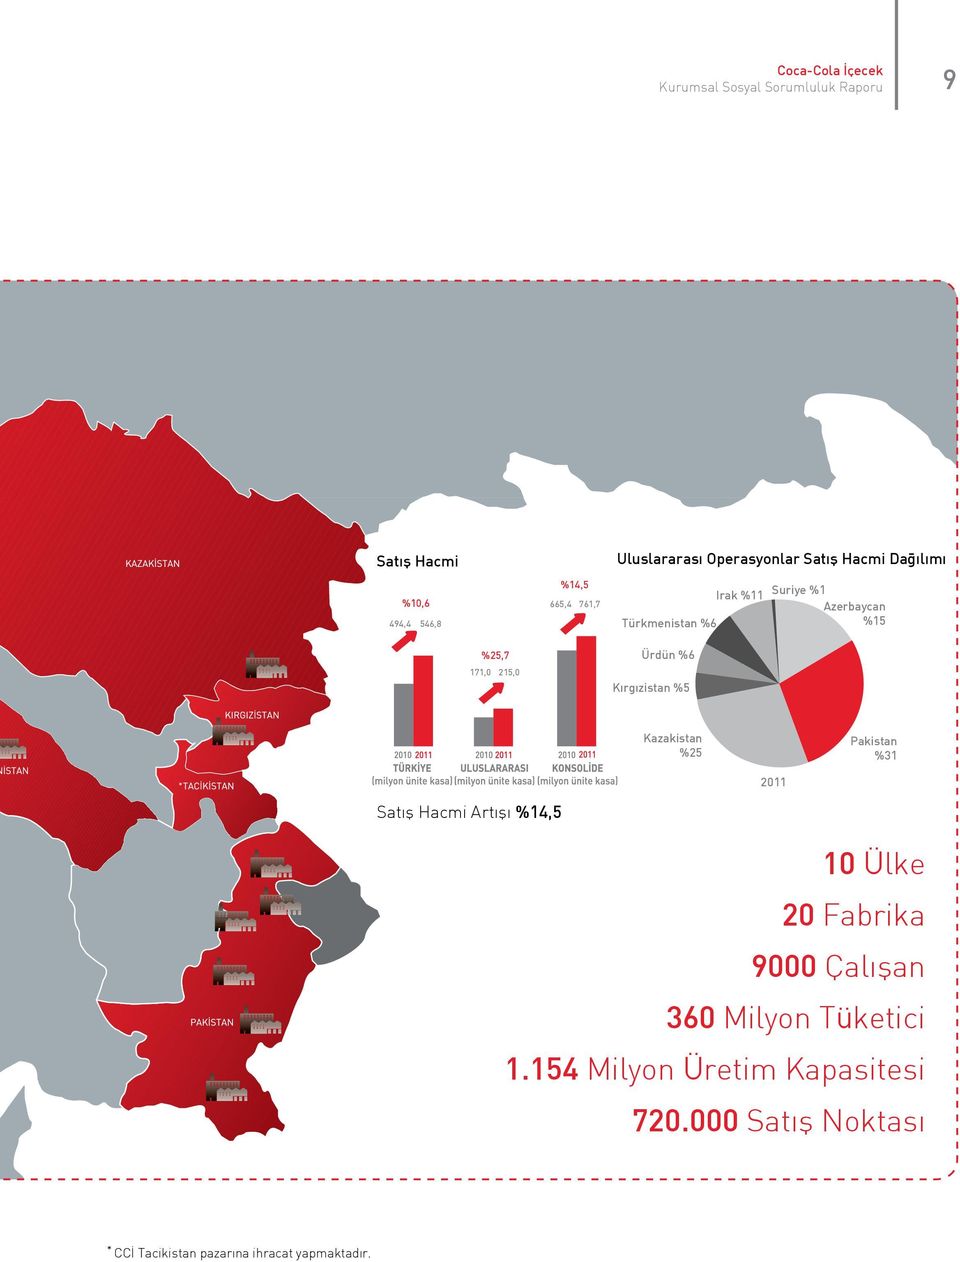 Kırgızistan %5 Kazakistan %25 Pakistan %31 2011 Satış Hacmi Artışı %14,5 10 Ülke 20 Fabrika 9000 Çalışan 360